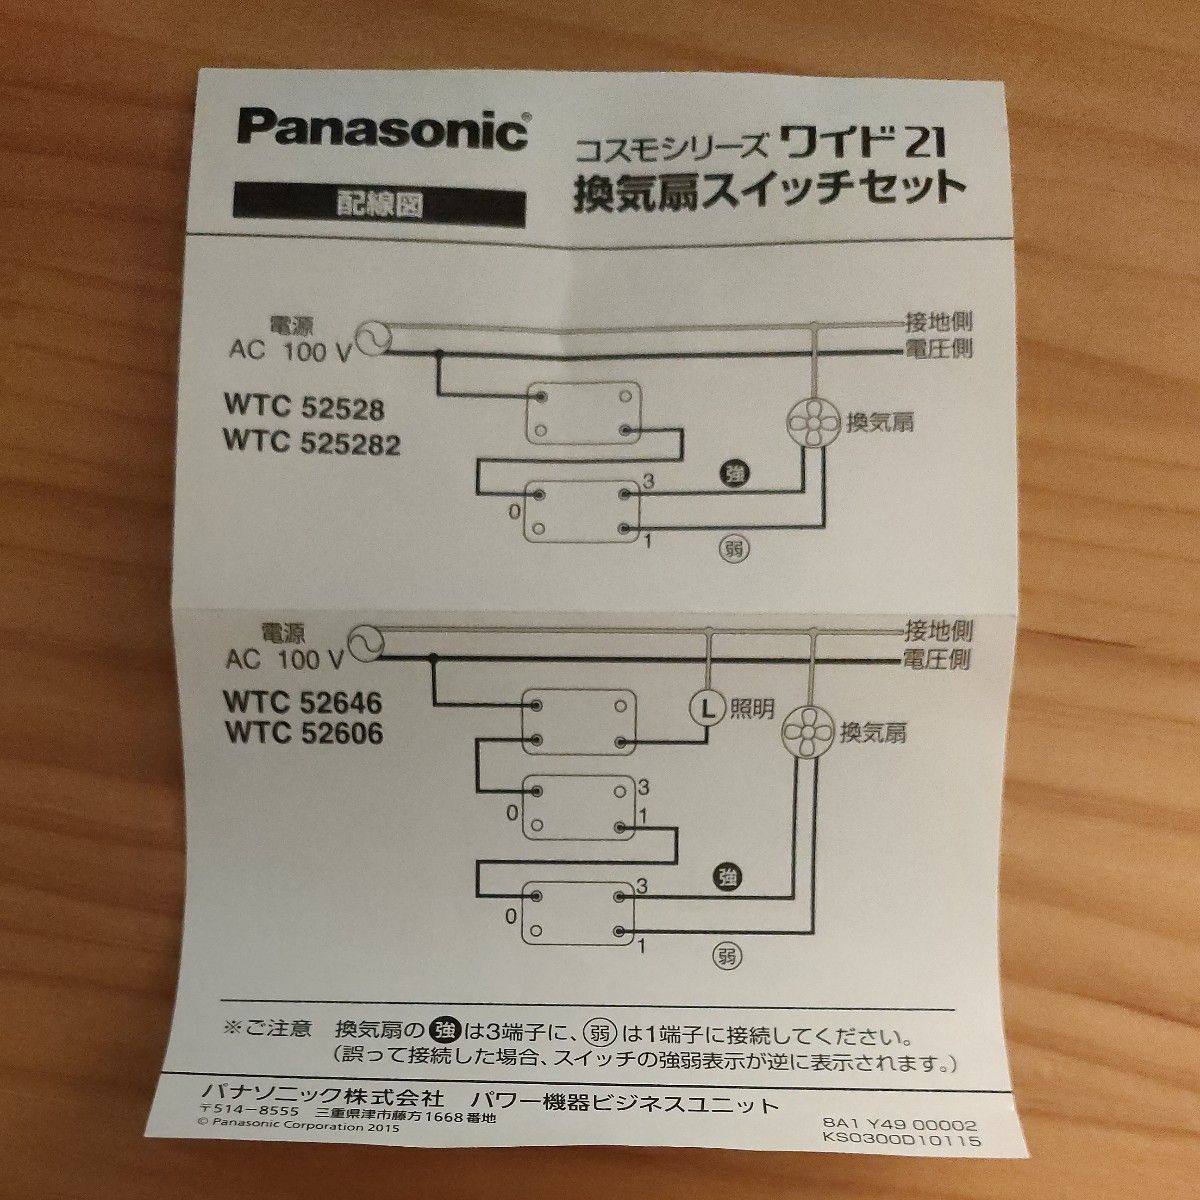 パナソニック (Panasonic) コスモシリーズワイド21 埋込換気扇スイッチセット 0.5A ホワイト WTC52606W